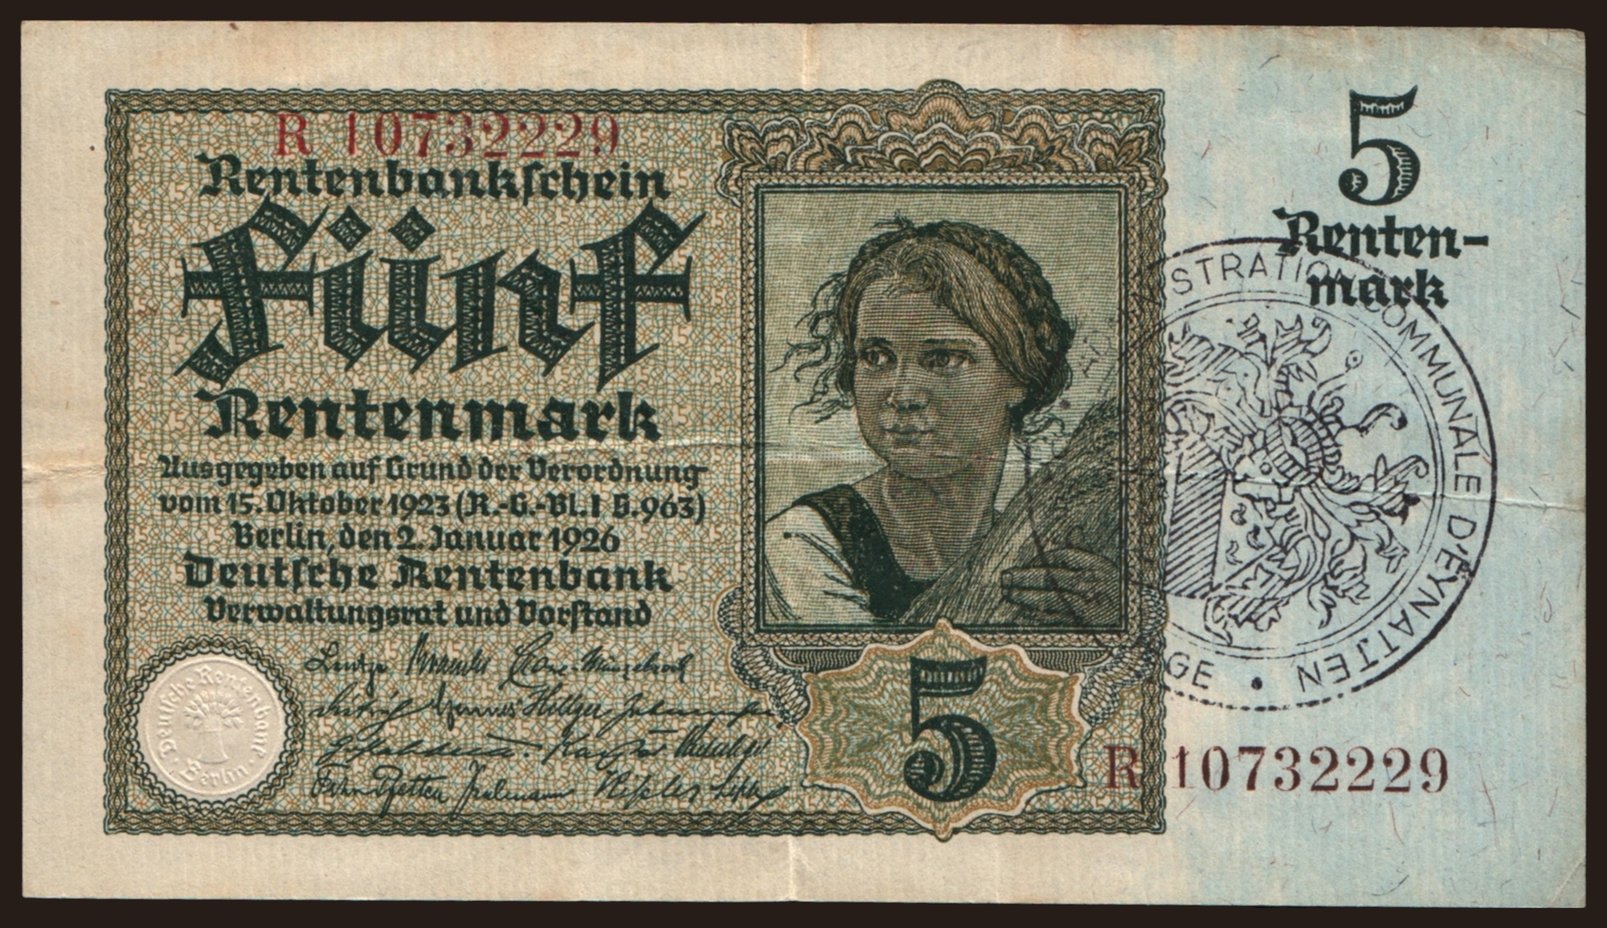 5 Rentenmark, 1926(44)